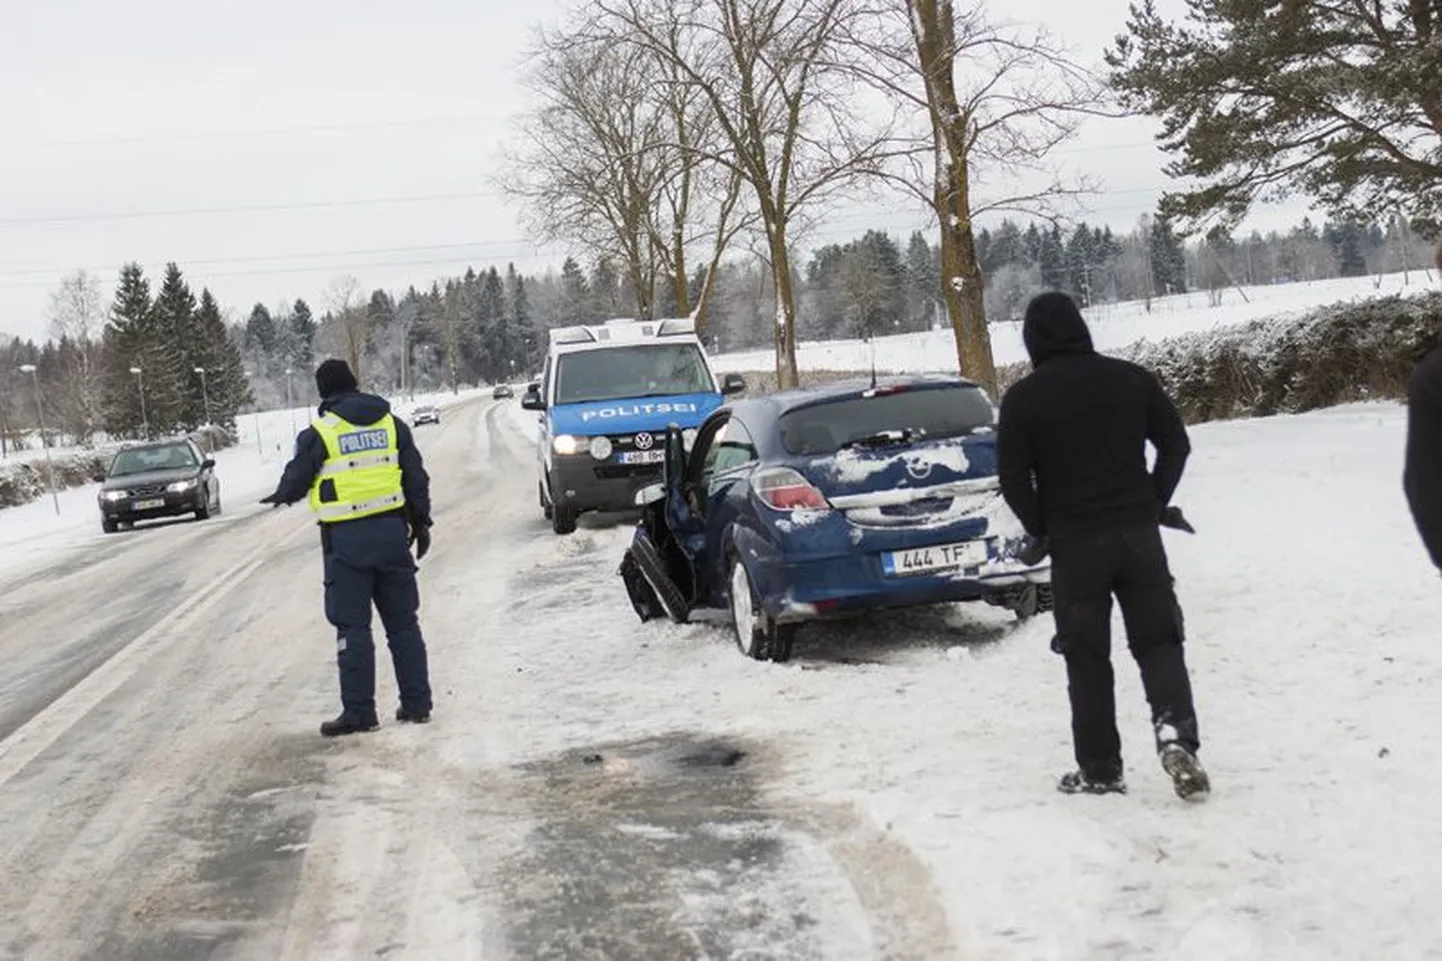 Eile hommikul kaotas 22-aastase naise juhitud sõiduauto Opel Piira ja Pajusti vahelisel teelõigul libeduse tõttu juhitavuse ja sõitis vastu puud. Õnnetus juhtus umbes kaks kilomeetrit Piiralt Pajusti poole. Kiirabi viis sohvri Rakvere haiglasse tervisekontrolli. Politsei hinnangul olid teed eile hommikul libedad.